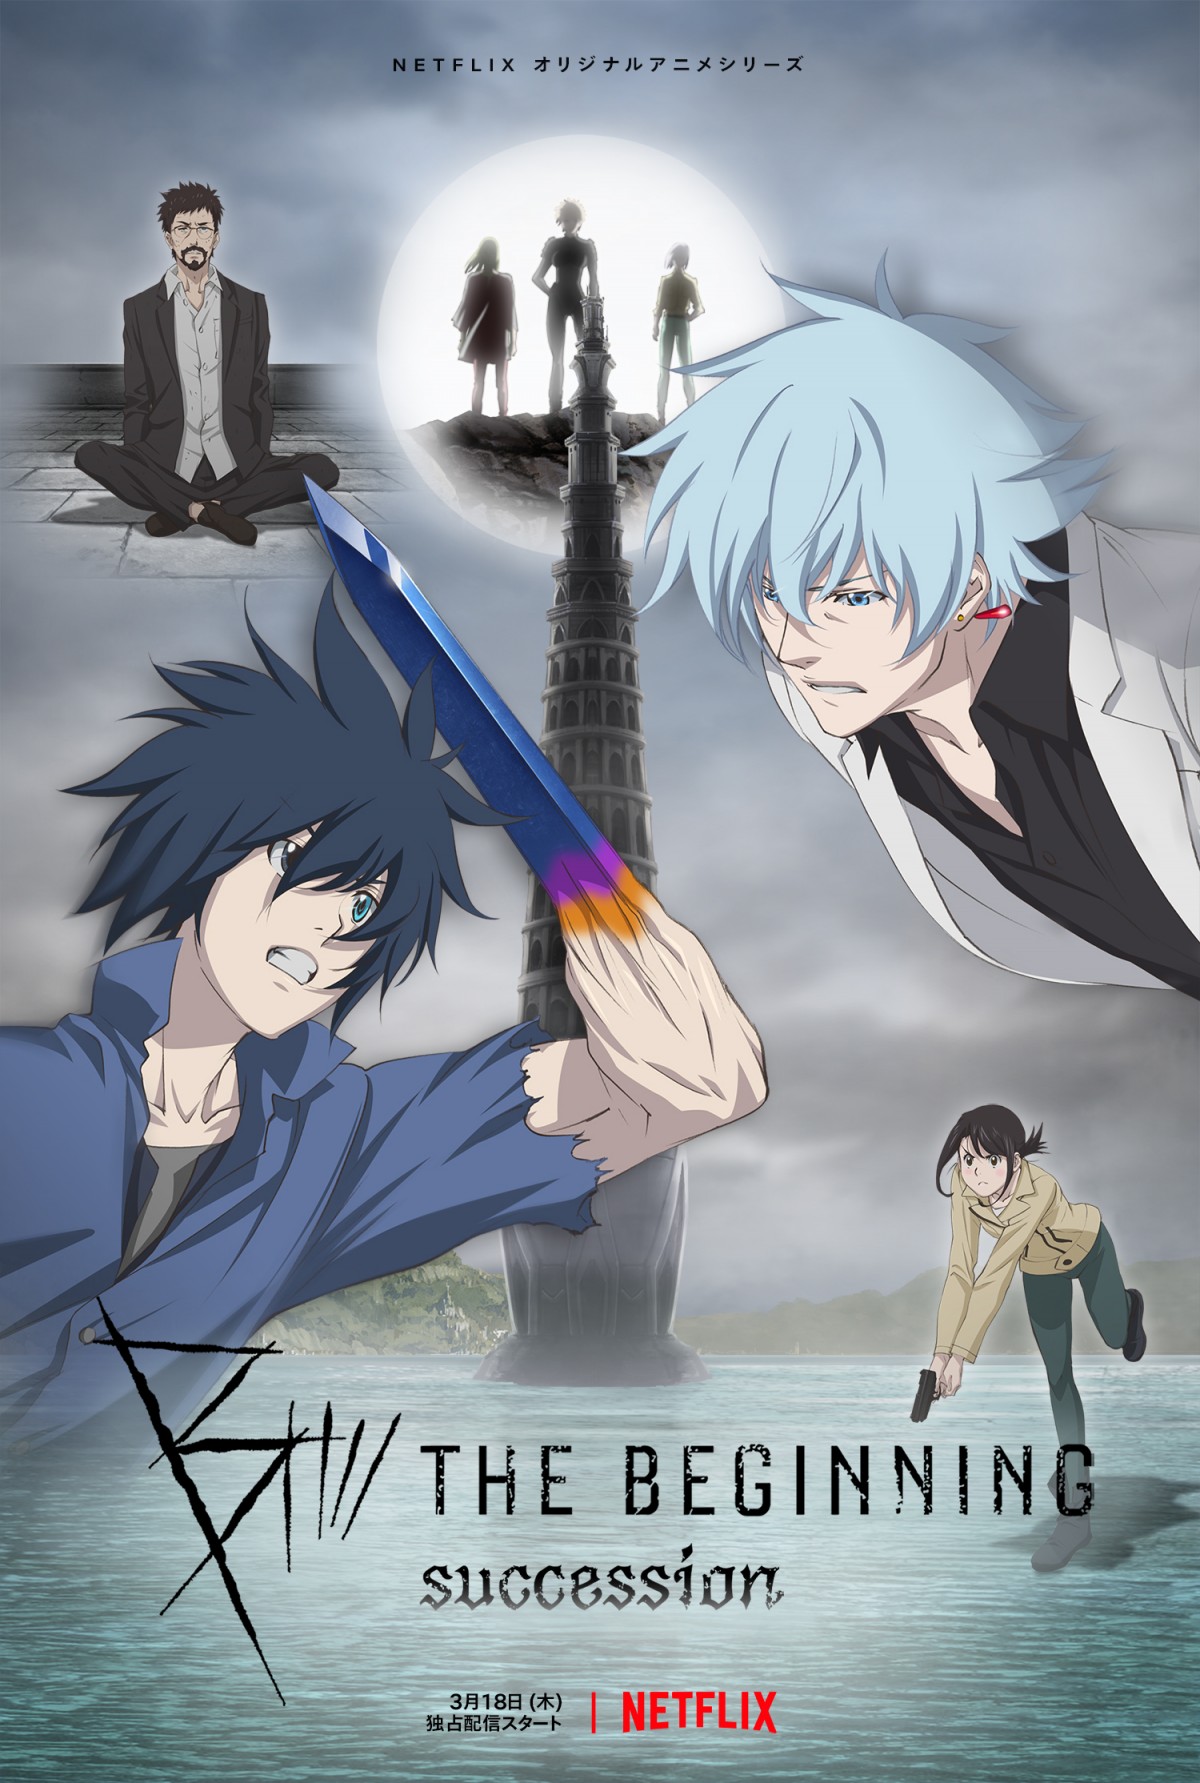 Netflixオリジナルアニメシリーズ『B： The Beginning Succession』キーアート